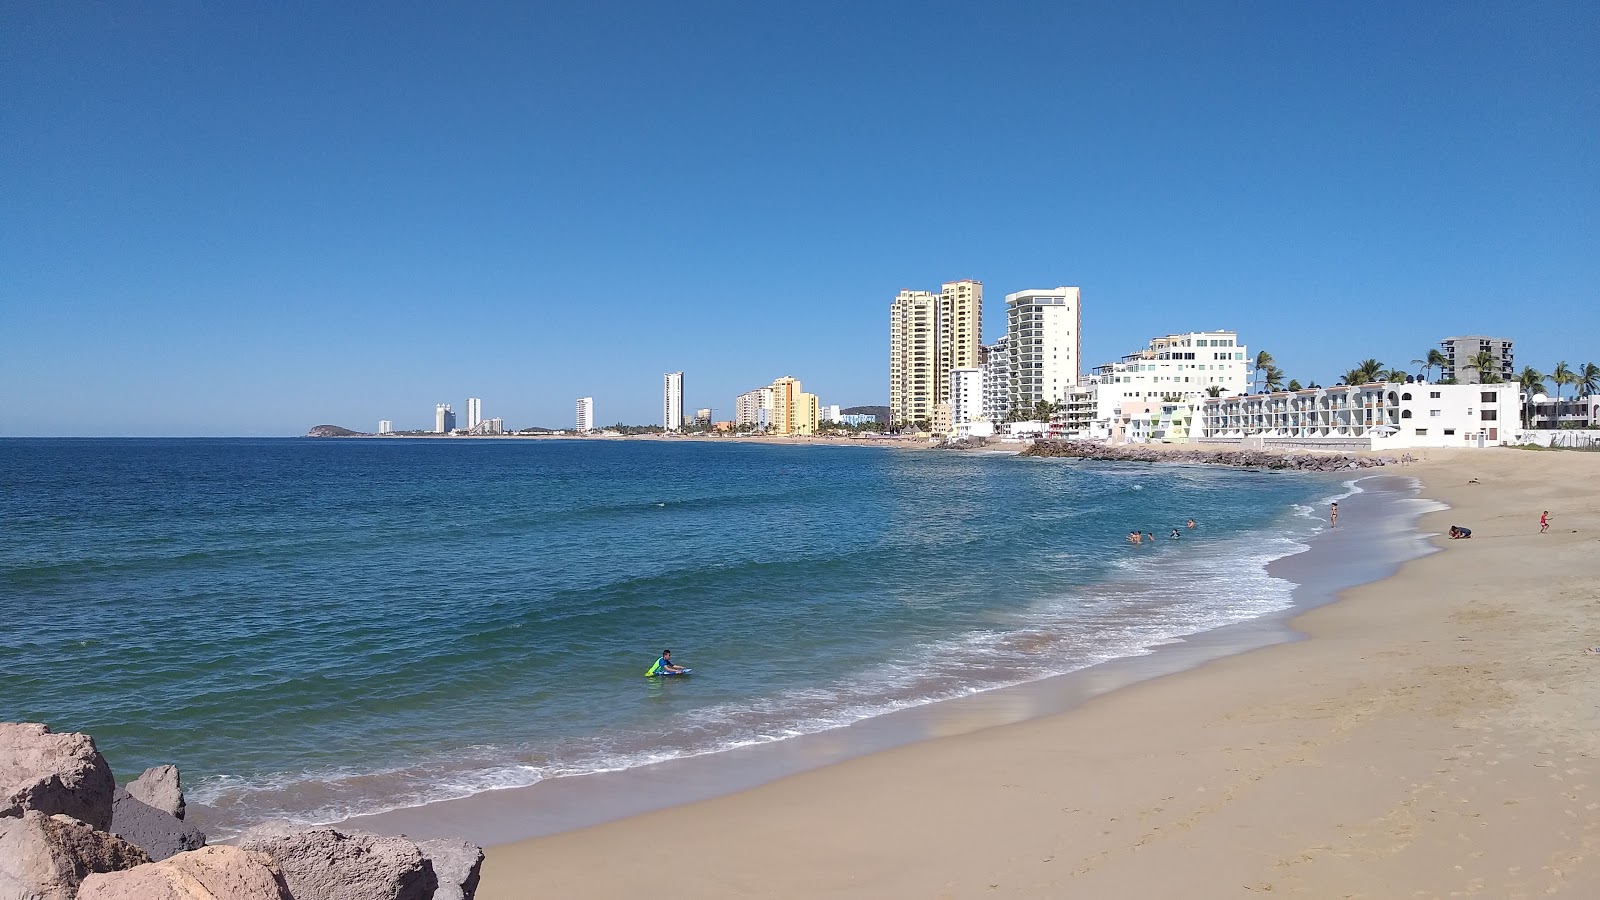 Cerritos beach'in fotoğrafı parlak ince kum yüzey ile